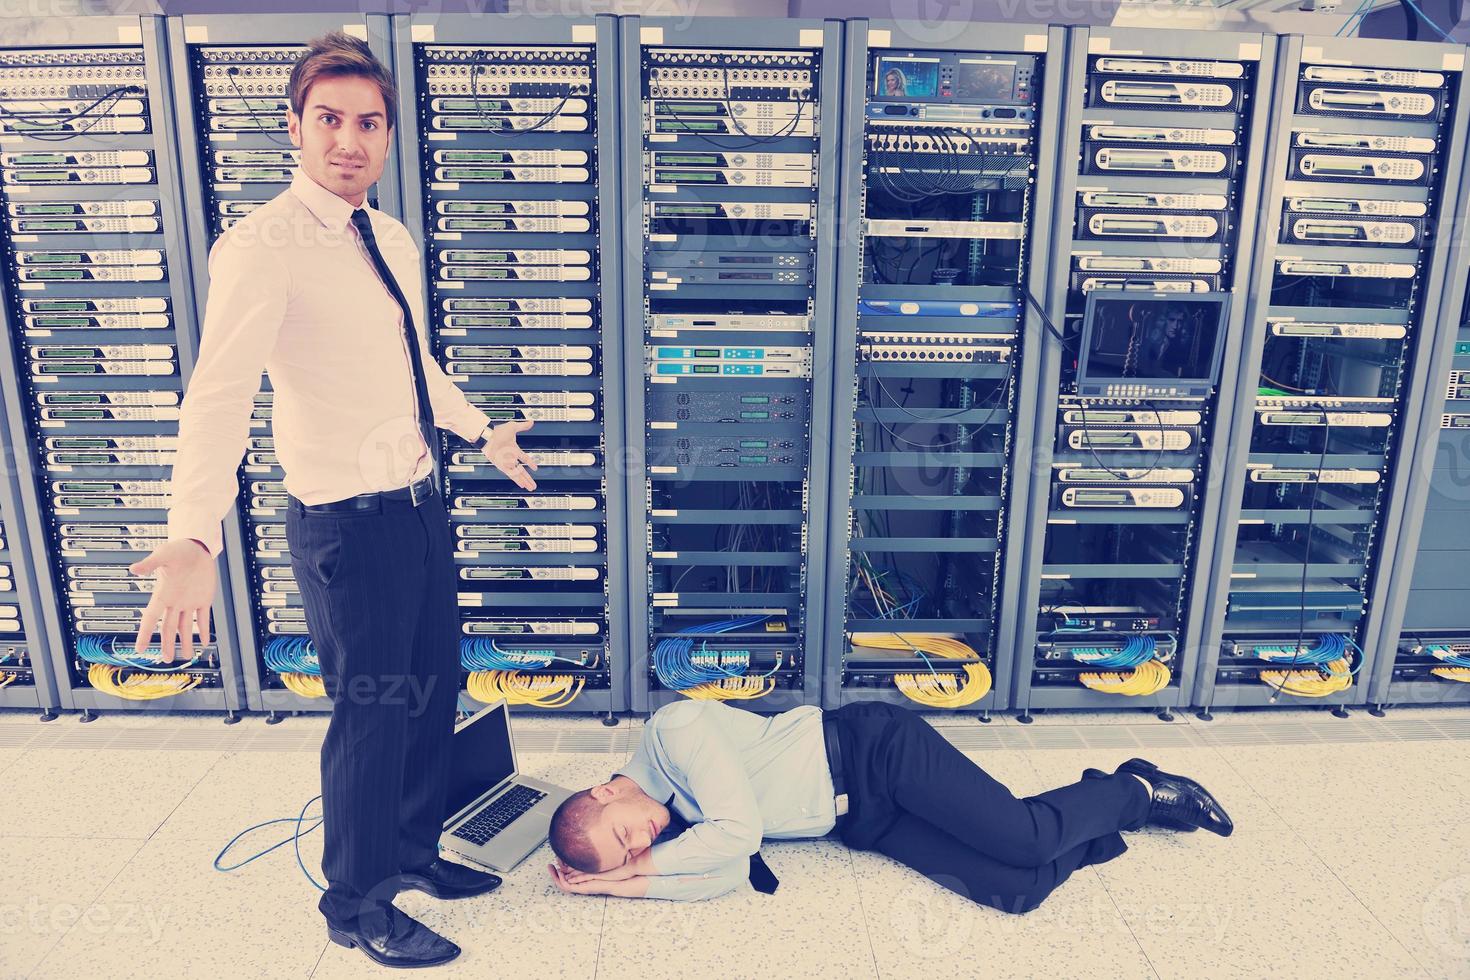 systeem mislukken situatie in netwerk server kamer foto